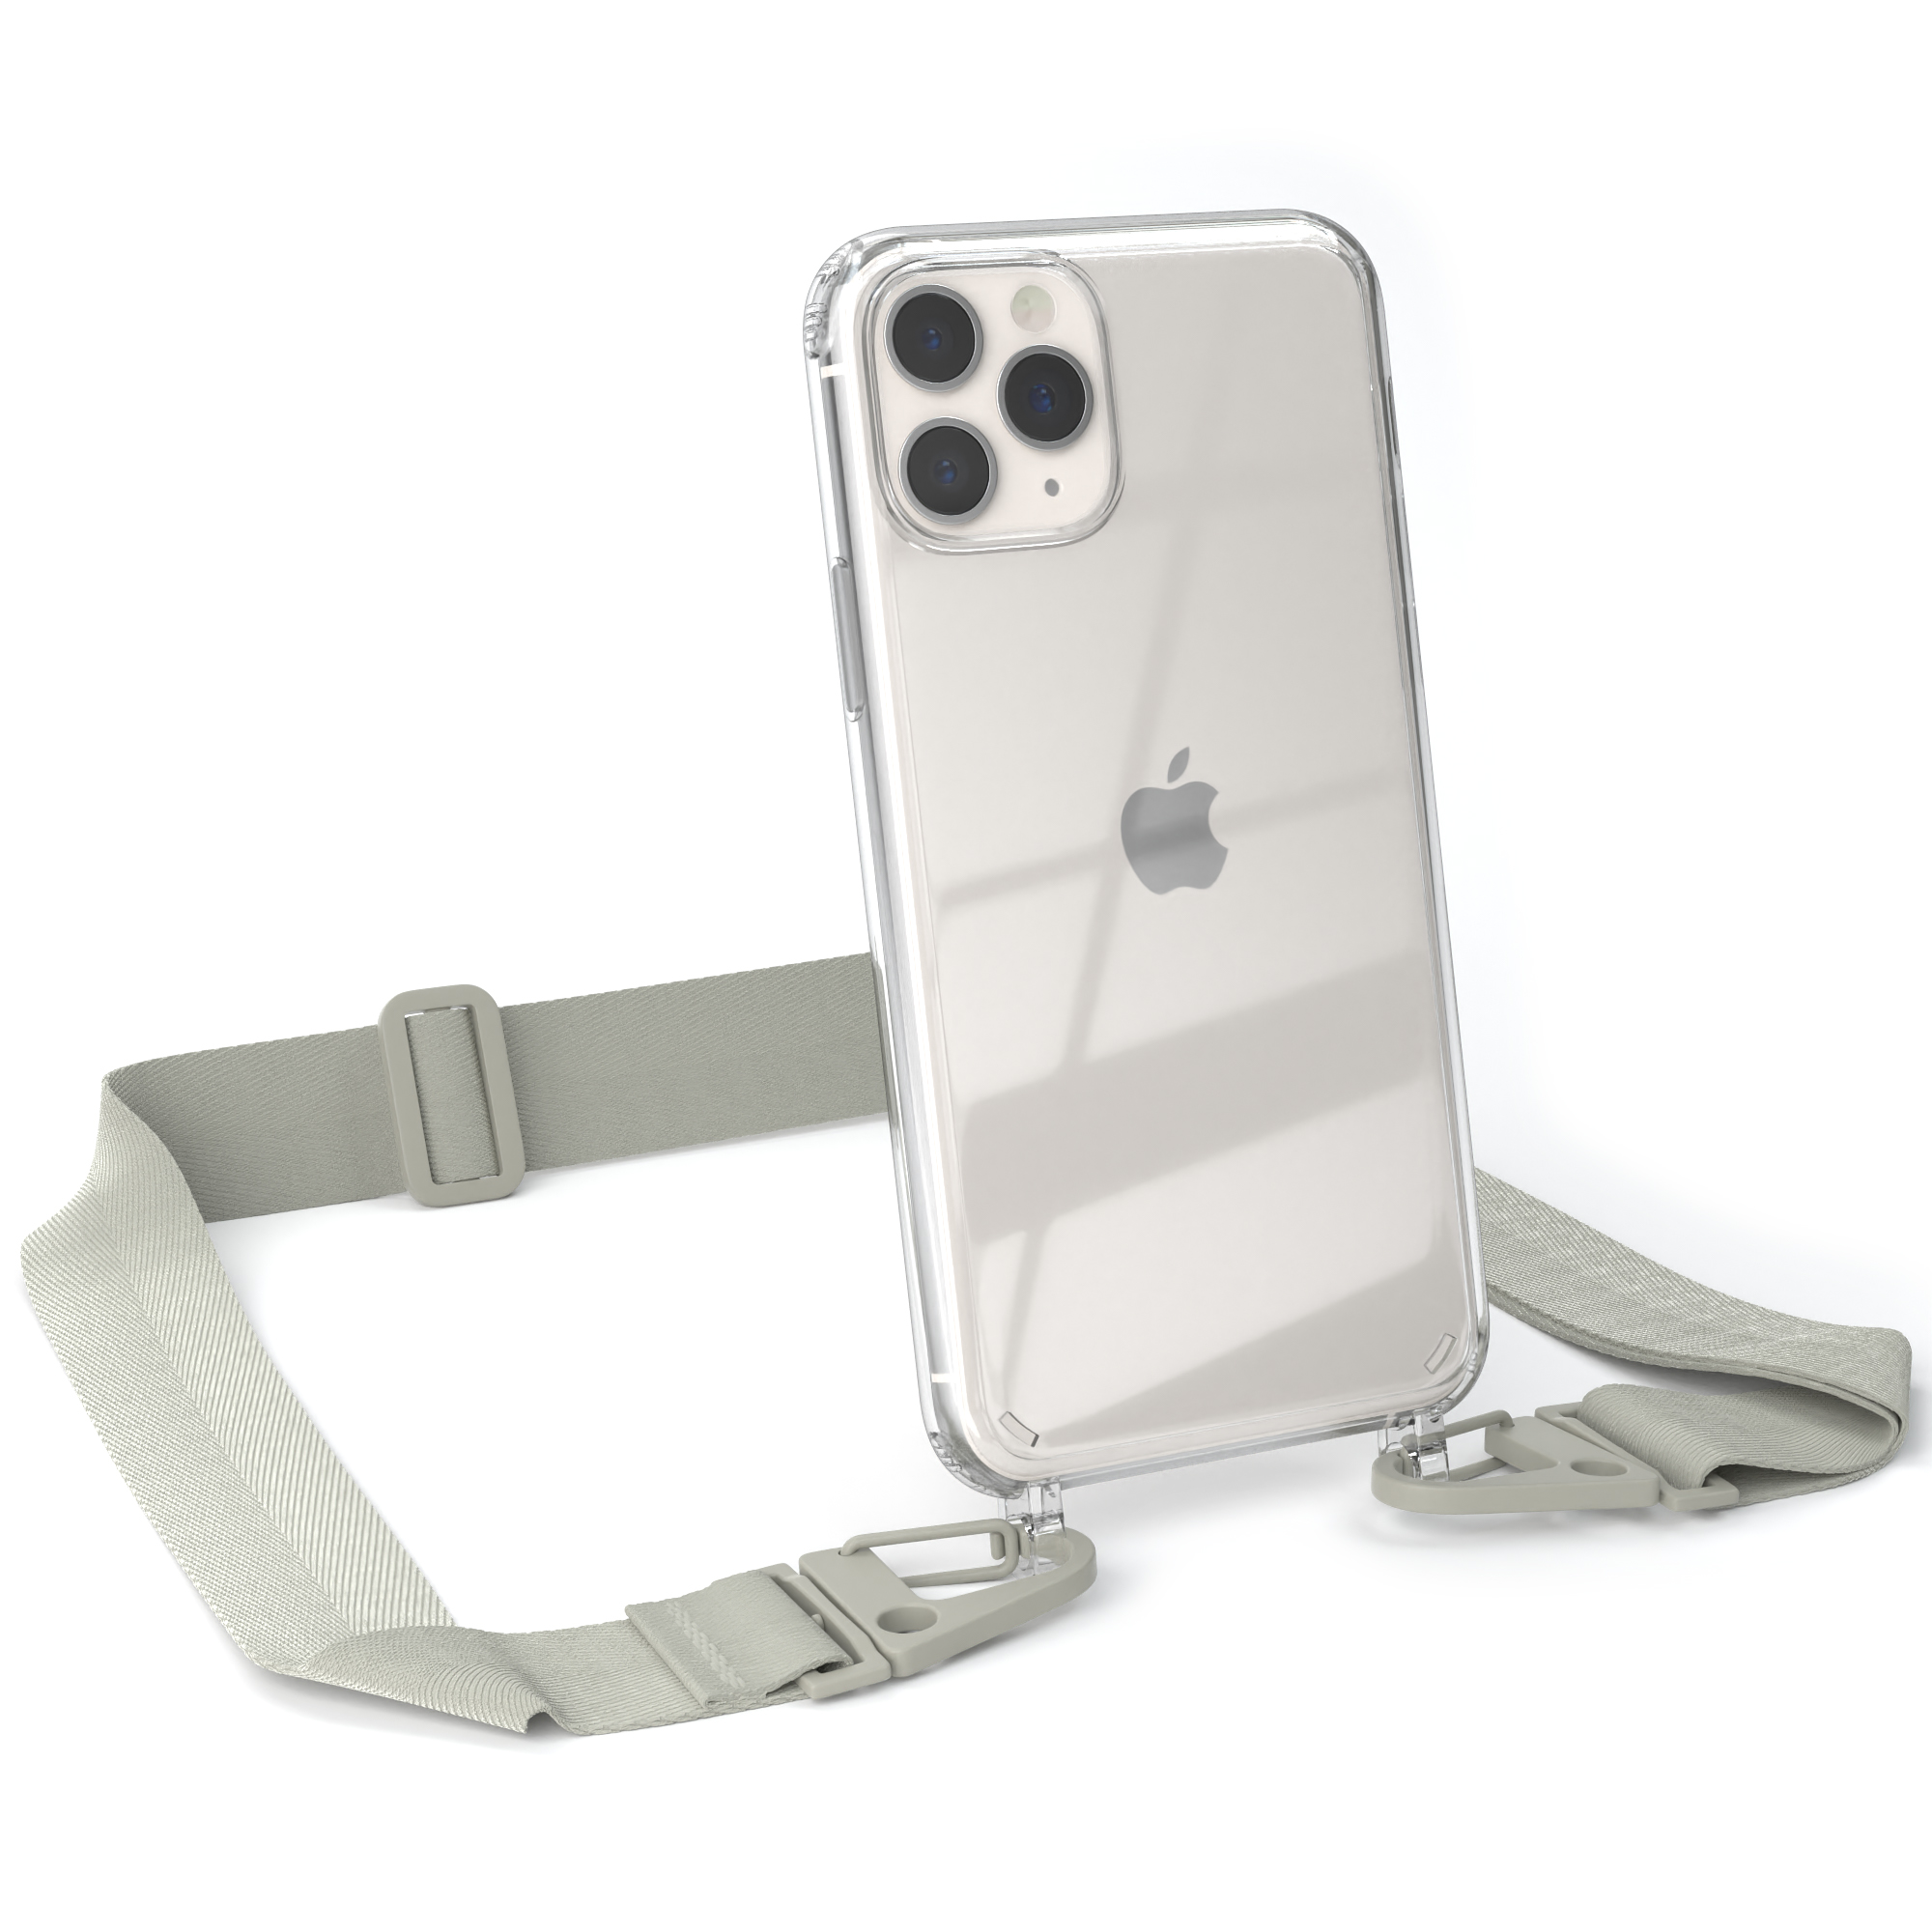 EAZY CASE Transparente Handyhülle 11 Apple, Kordel / mit Pro, Karabiner, iPhone Umhängetasche, Grau breiter Beige Taupe 